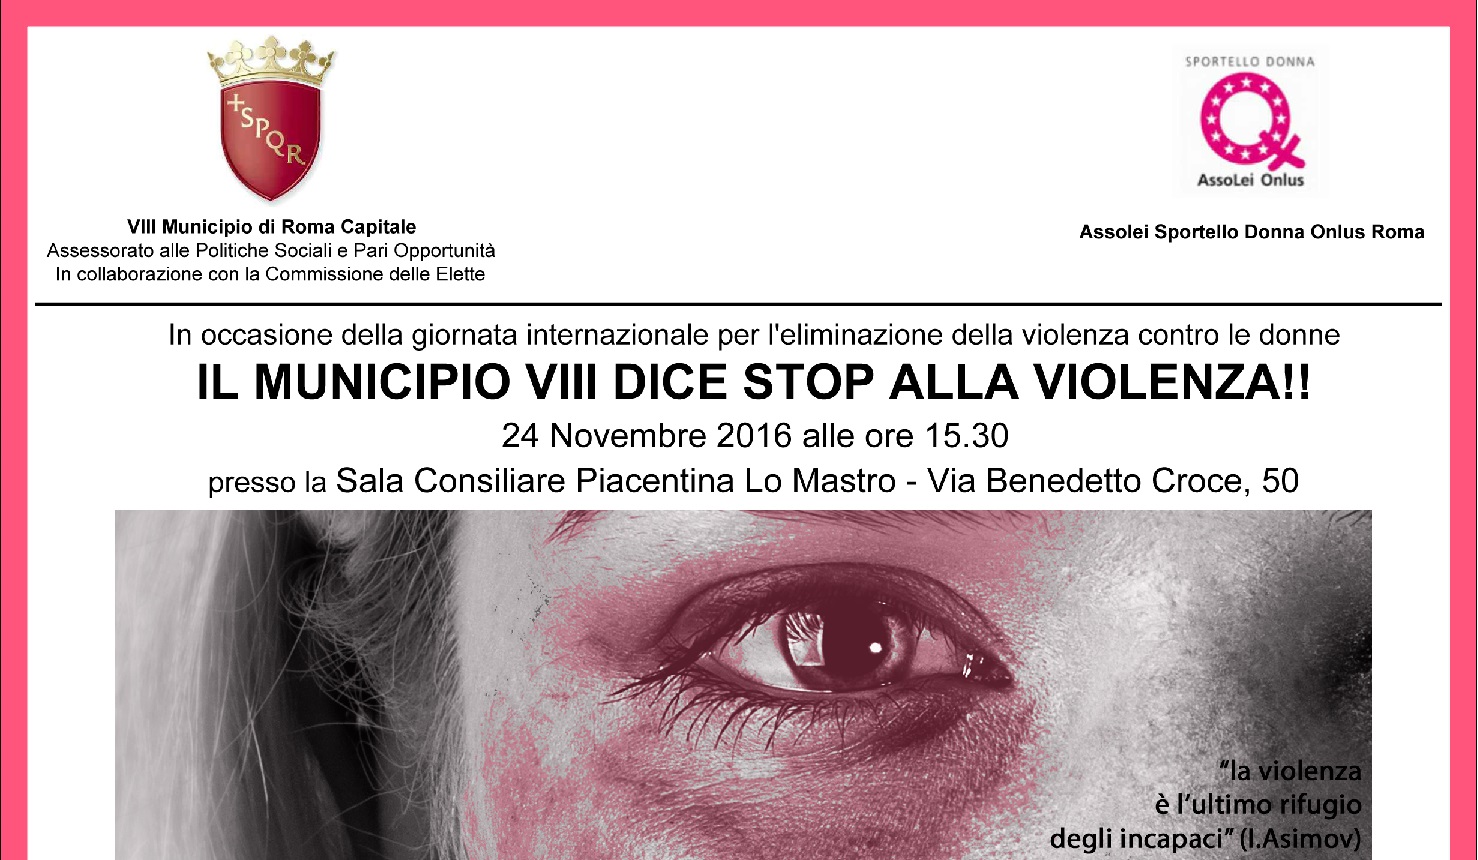 Il Municipio VIII dice stop alla violenza sulle donne